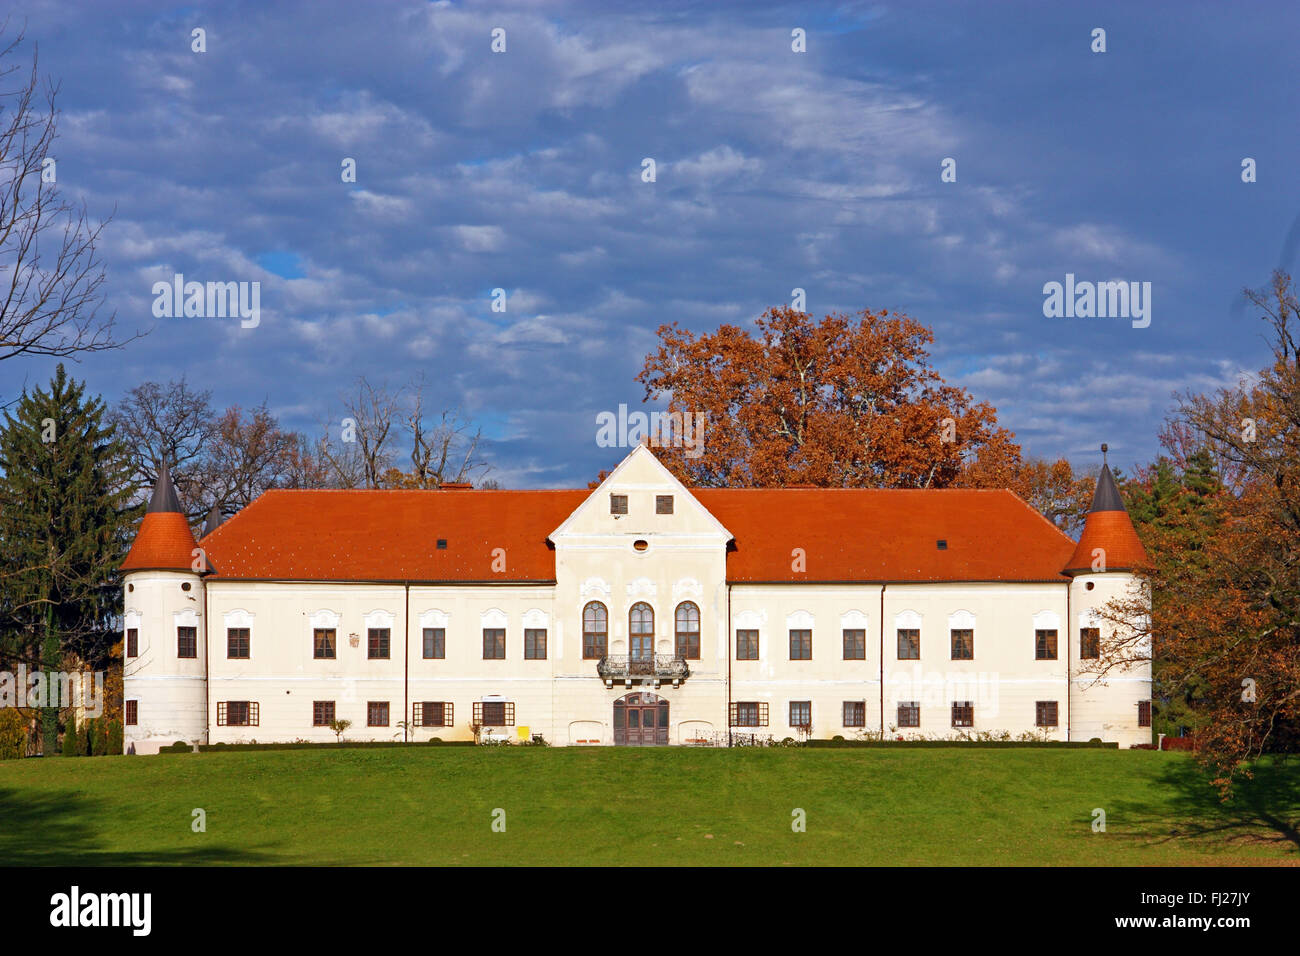 Luznica castle, baroque manor located in Zapresic, Croatia Stock Photo